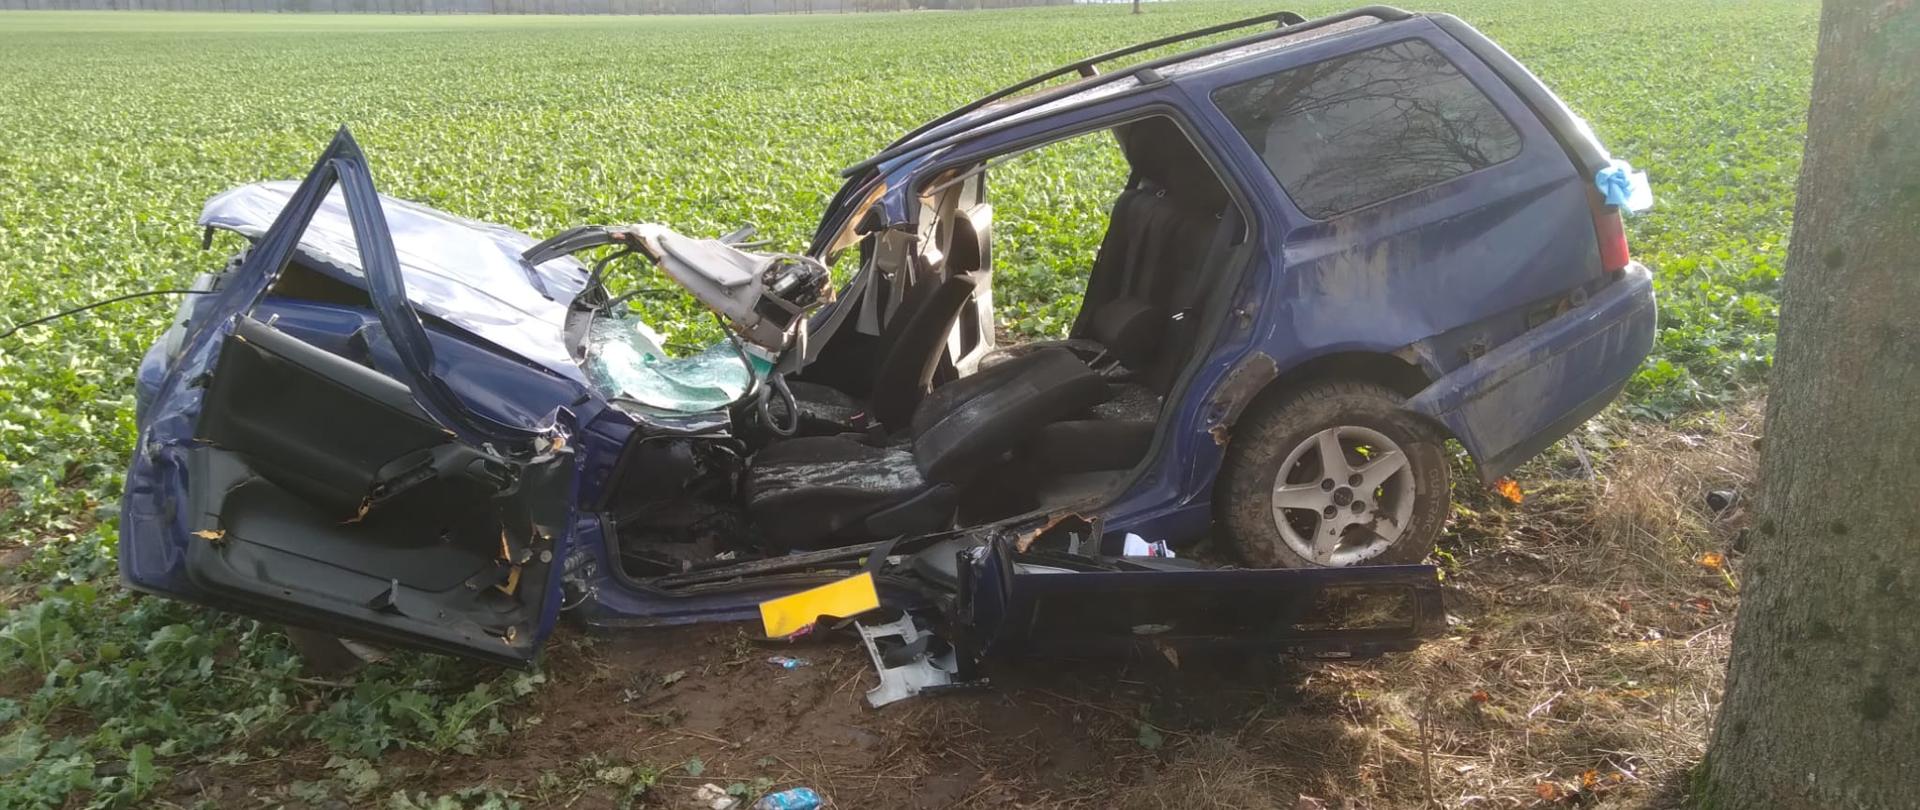 Zdjęcie przedstawia rozbity niebieski samochód osobowy, który ma wyciętą część karoserii. Auto znajduje się na polu rzepaku. Samochód ma zmiażdżoną przednią maskę od uderzenia w drzewo .